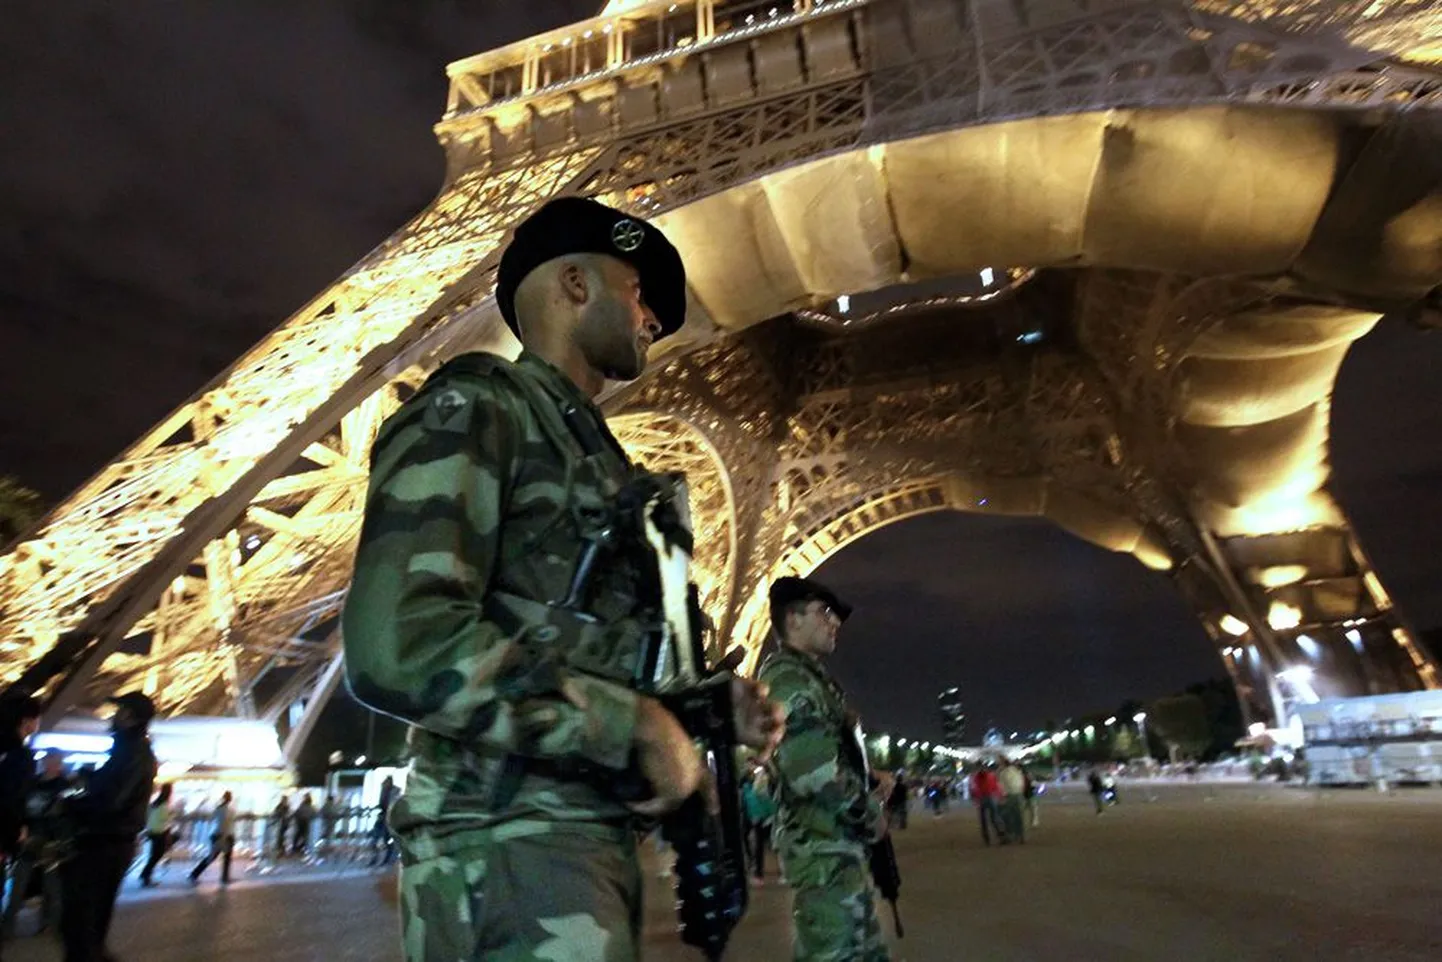 Prantsuse sõjaväelased valvavad Eiffeli torni.